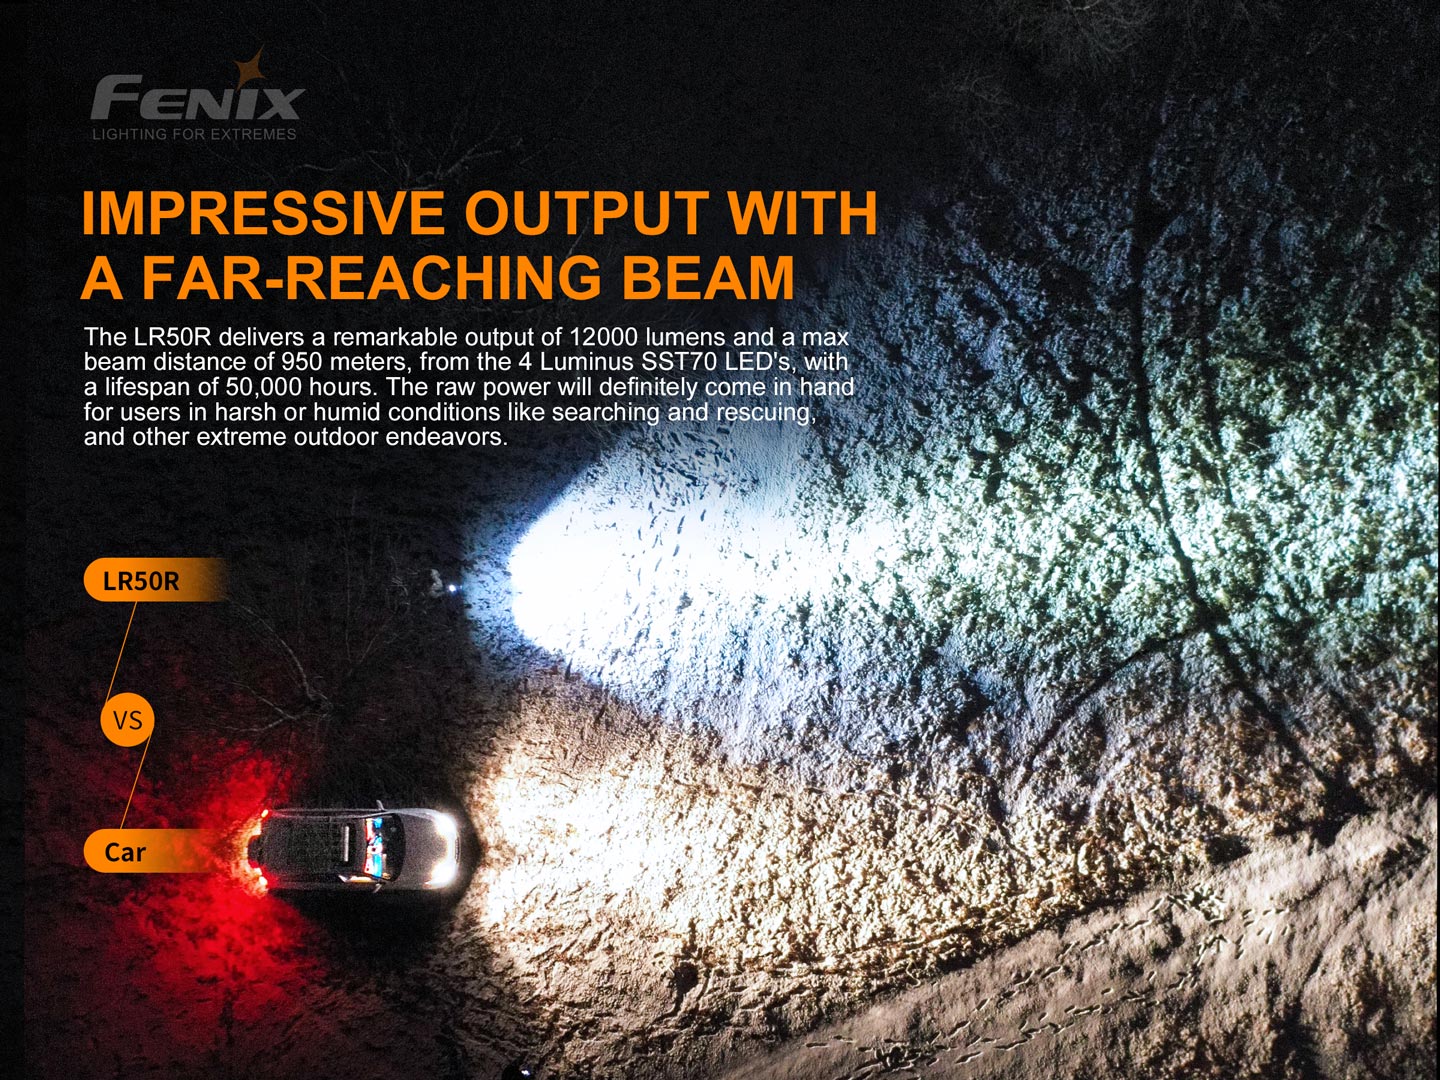 Fenix LR50R 12000lm 950m Flashlight Searchlight Rechargeable Fenix ​​LR50R adalah senter super terang yang dibuat untuk aktivitas menjelajah dan search & rescue. Senter Fenix ​​LR50R memancarkan output yang benar-benar luar biasa sebesar 12000 lumens. Dengan visibilitas sinar hingga 950 meter, dapat digunakan untuk menemukan objek apa pun dalam kegelapan. Sakelar samping baja tahan karat ganda memungkinkan anda dengan cepat mengaktifkan dan mengakses enam tingkat kecerahan umum dan mode fungsional, termasuk instan turbo, strobe, dan SOS. Dengan port pengisi daya USB Type-C yang disertakan, anda dapat mengisi daya Fenix ​​LR50R dengan cepat dalam hitungan jam, atau menggunakan fungsi discharge untuk mengisi daya perangkat anda yang lain Fungsi brightness downshifting sensor dirancang untuk menghindari suhu tinggi pada pencahayaan jarak dekat. Pemilihan mode yang mudah, untuk mudah beradaptasi dengan lingkungan anda, senter ini adalah alat yang sempurna untuk menjelajah, dan misi search & rescue.